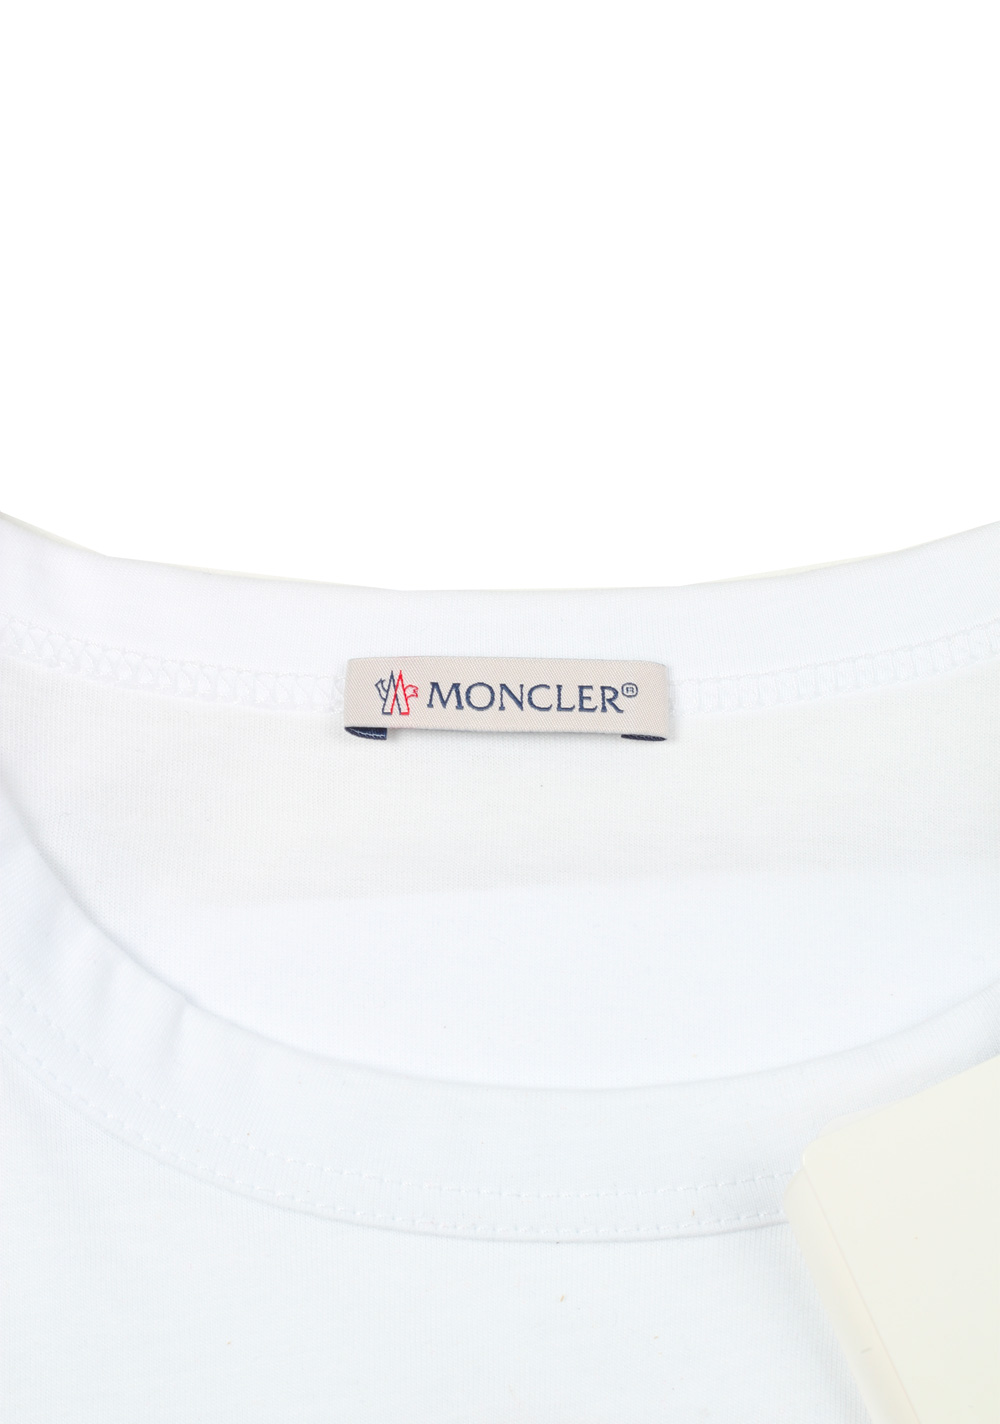 Moncler White Crew Neck Tee Shirt Size S / 36R U.S. | Costume Limité